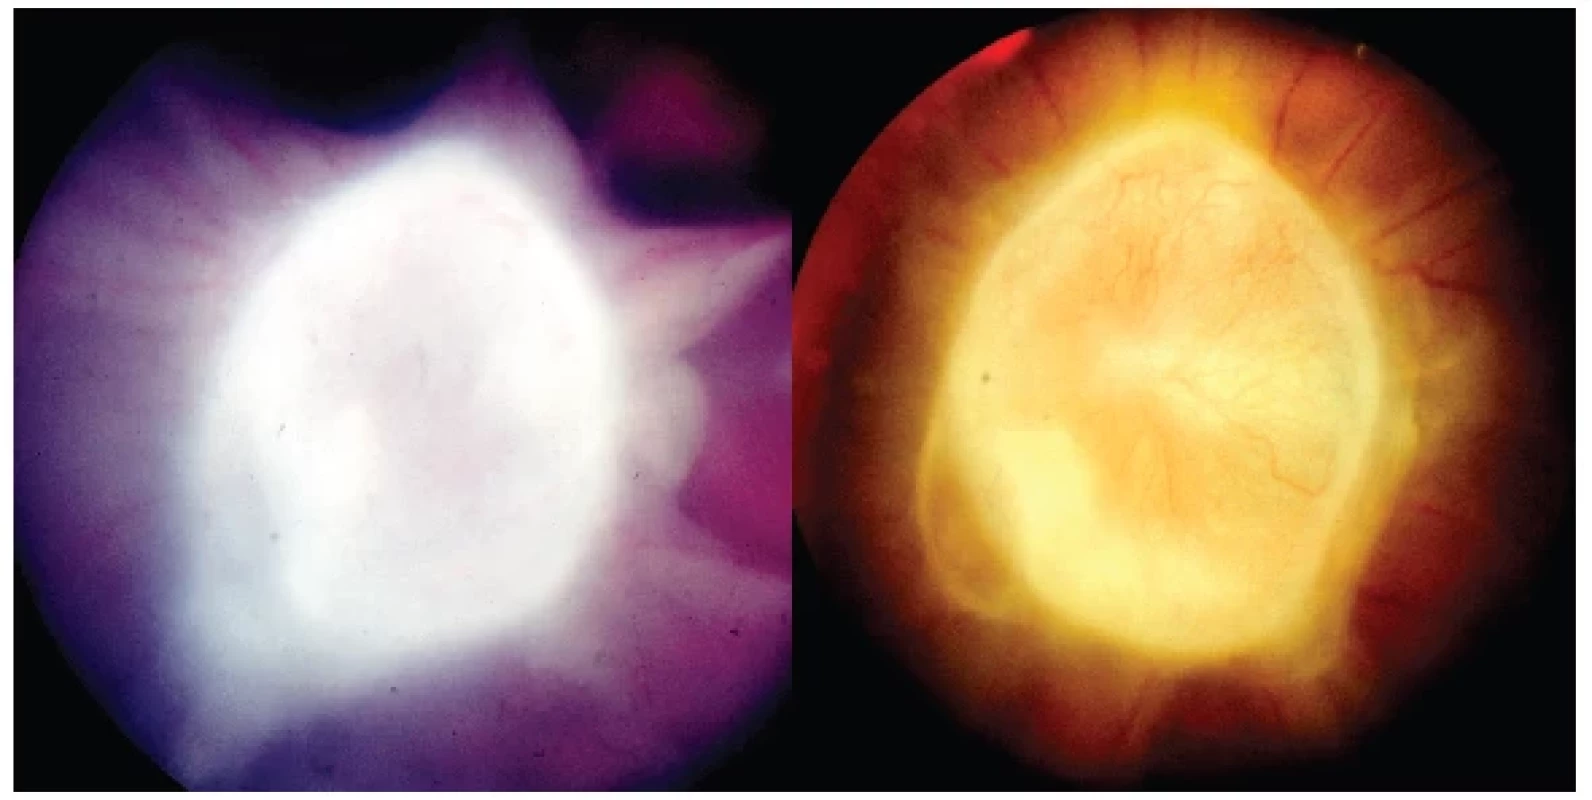 Vlevo: Cystický granulom hlavy zrakového nervu toxokarové etiologie s vitreálními
pruhy před celkovou terapií
Vpravo: Cystický granulom hlavy zrakového nervu toxokarové etiologie s kapilárami na
jeho povrchu půl roku po kombinované léčbě